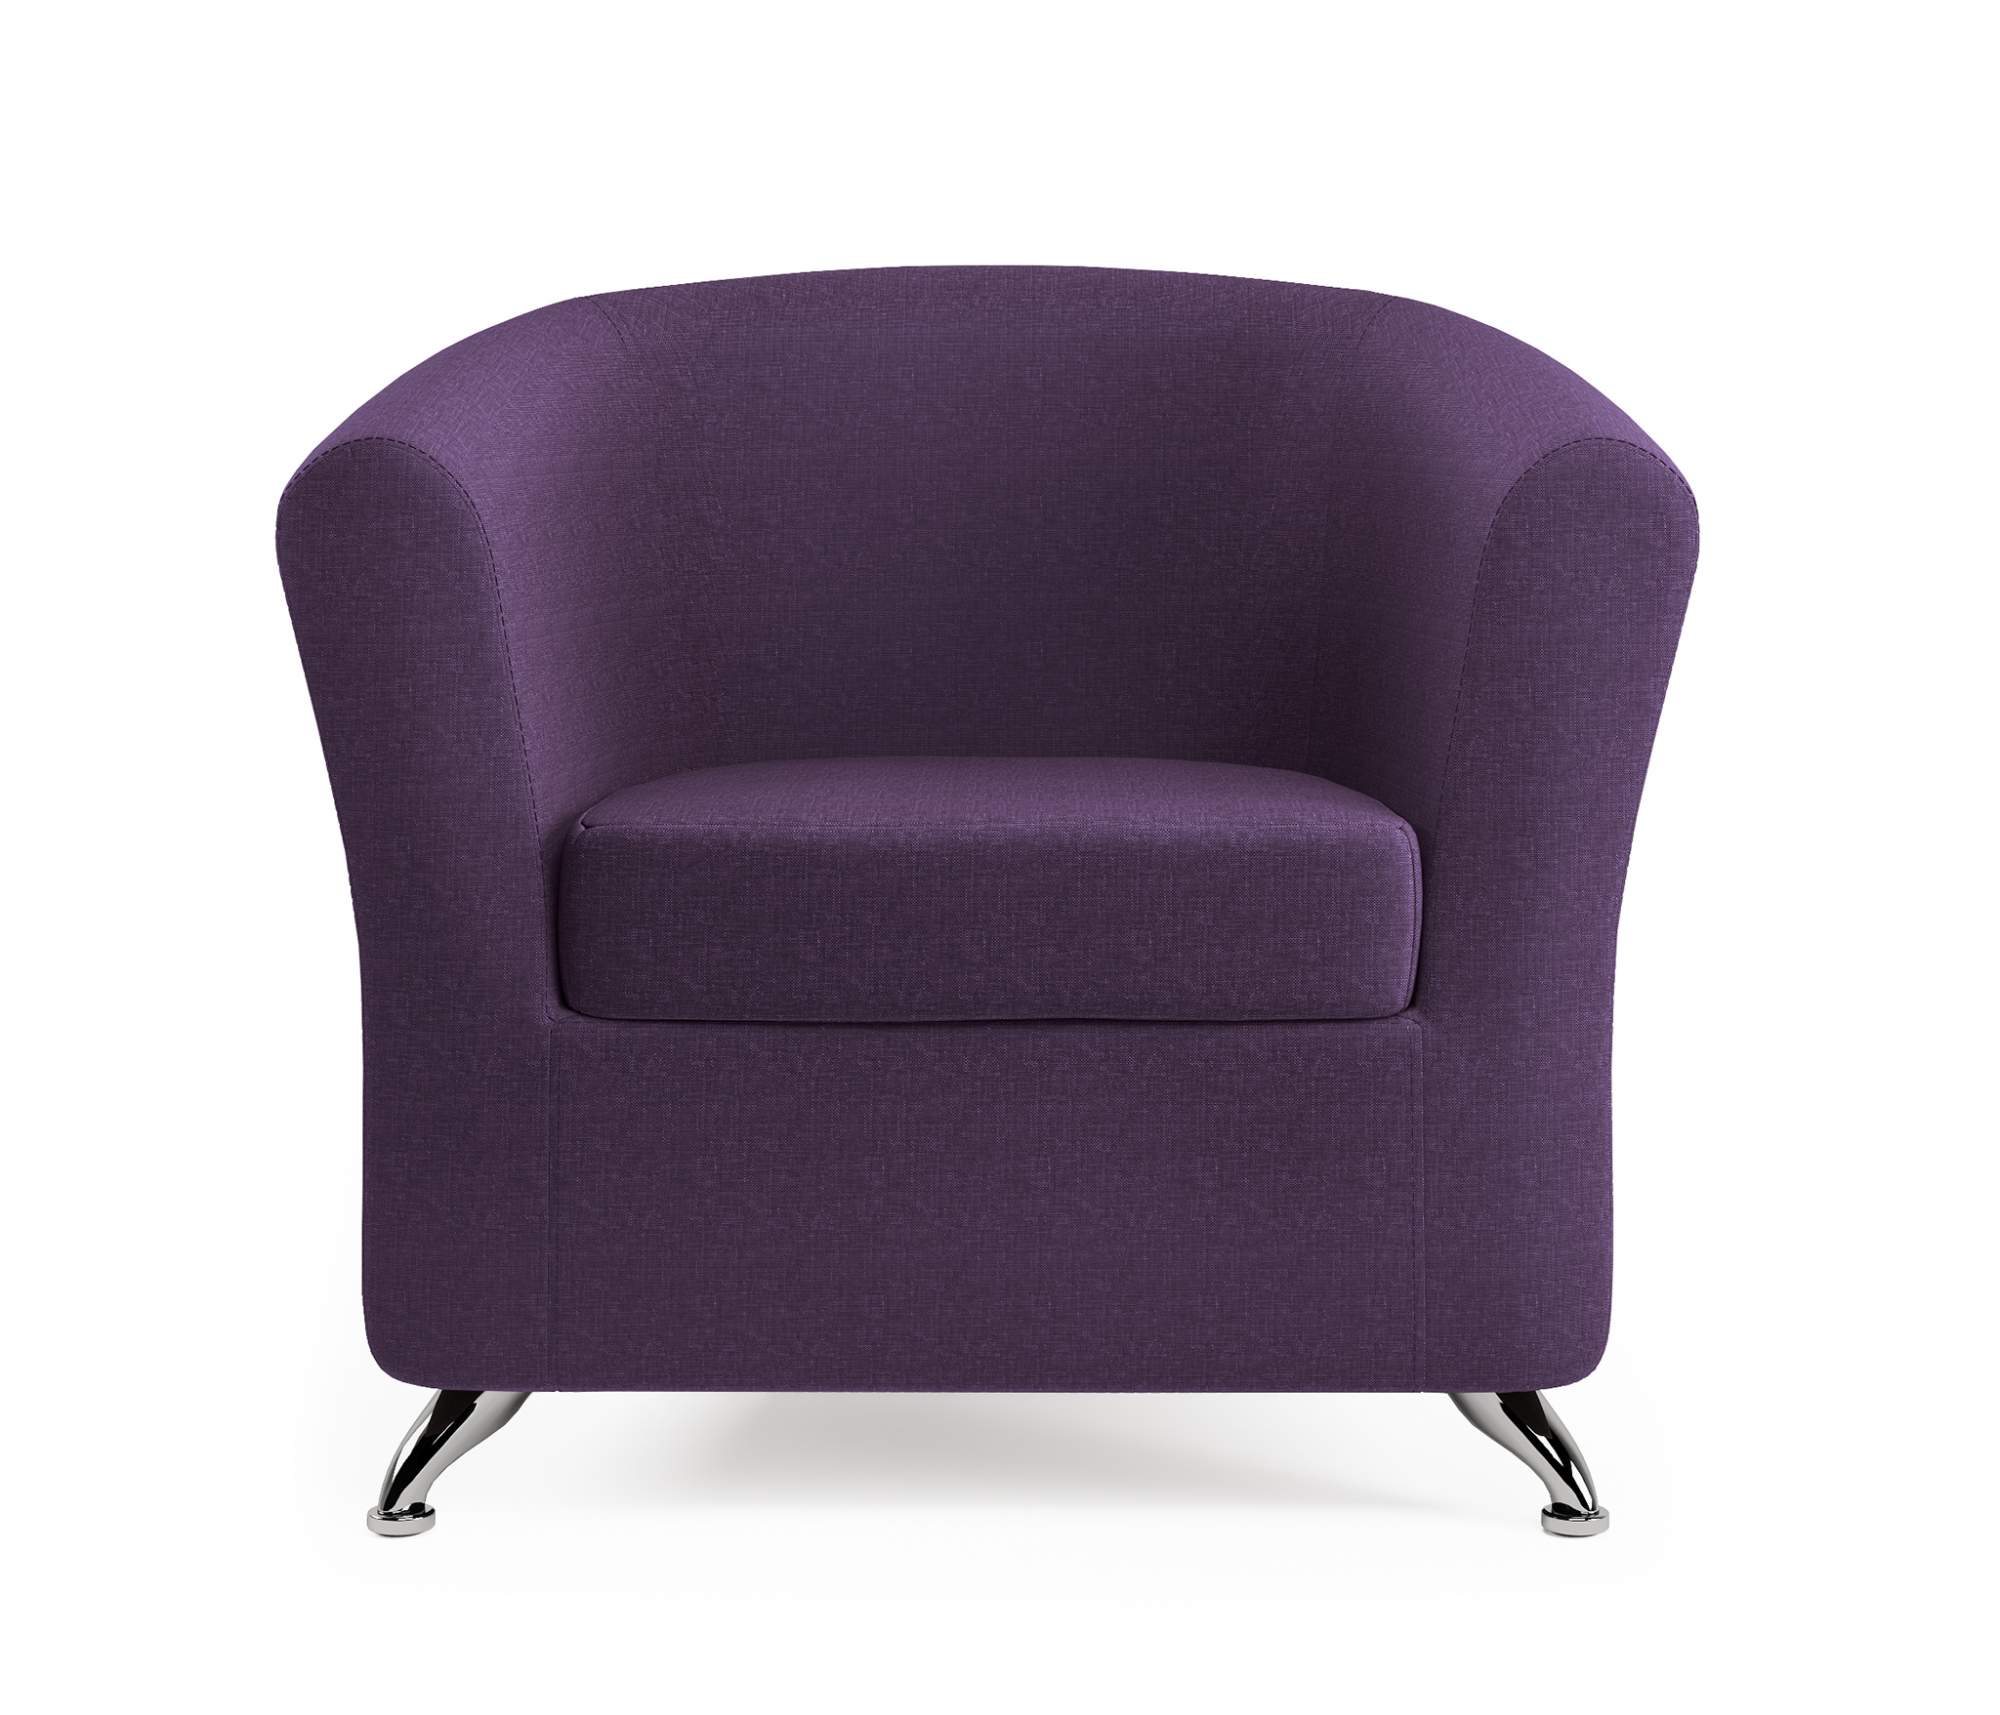 Кресло Шарм-Дизайн Евро фиолетовая рогожка